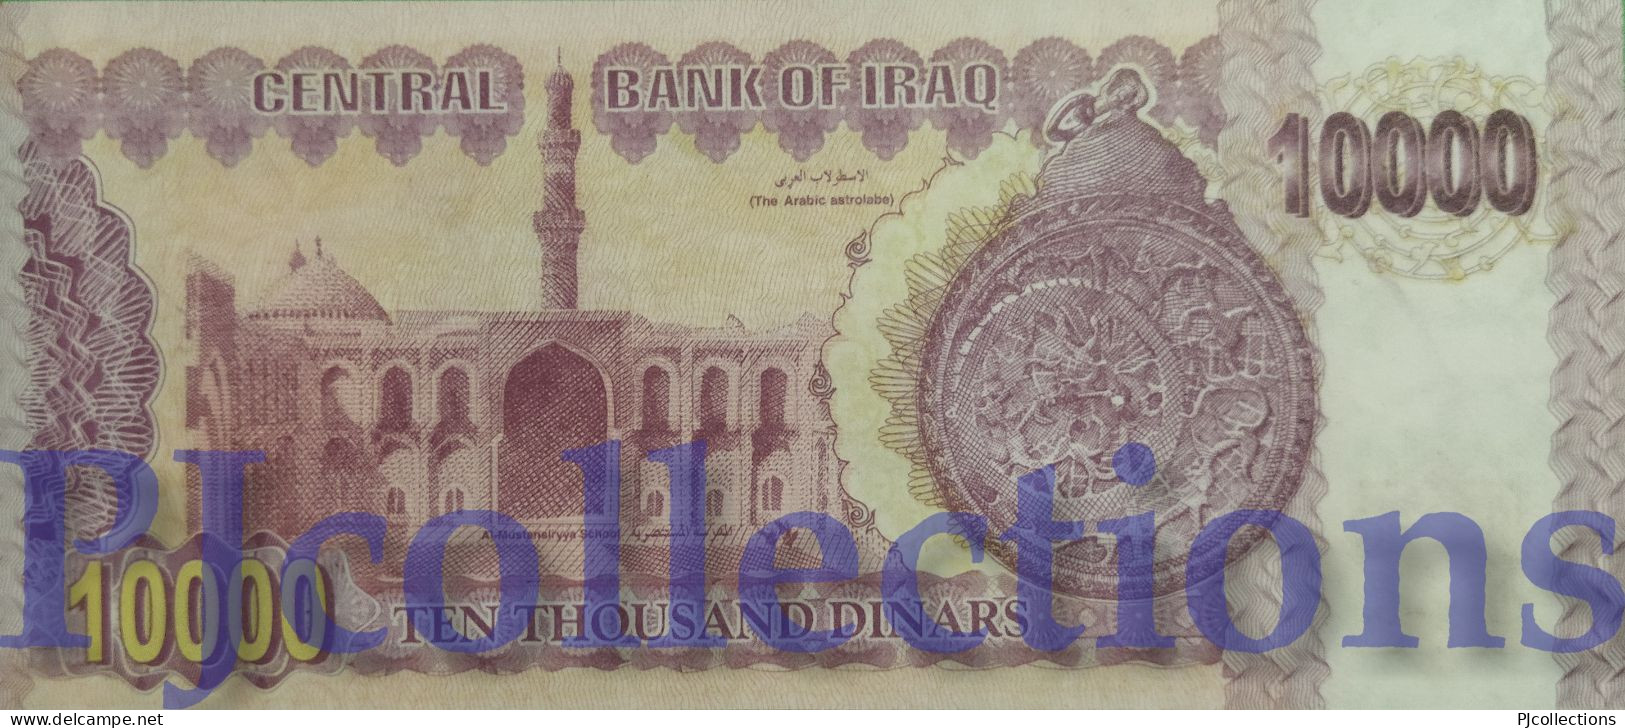 IRAQ 10000 DINARS 2002 PICK 89 UNC GOOD SERIAL NUMBER "545444" - Irak